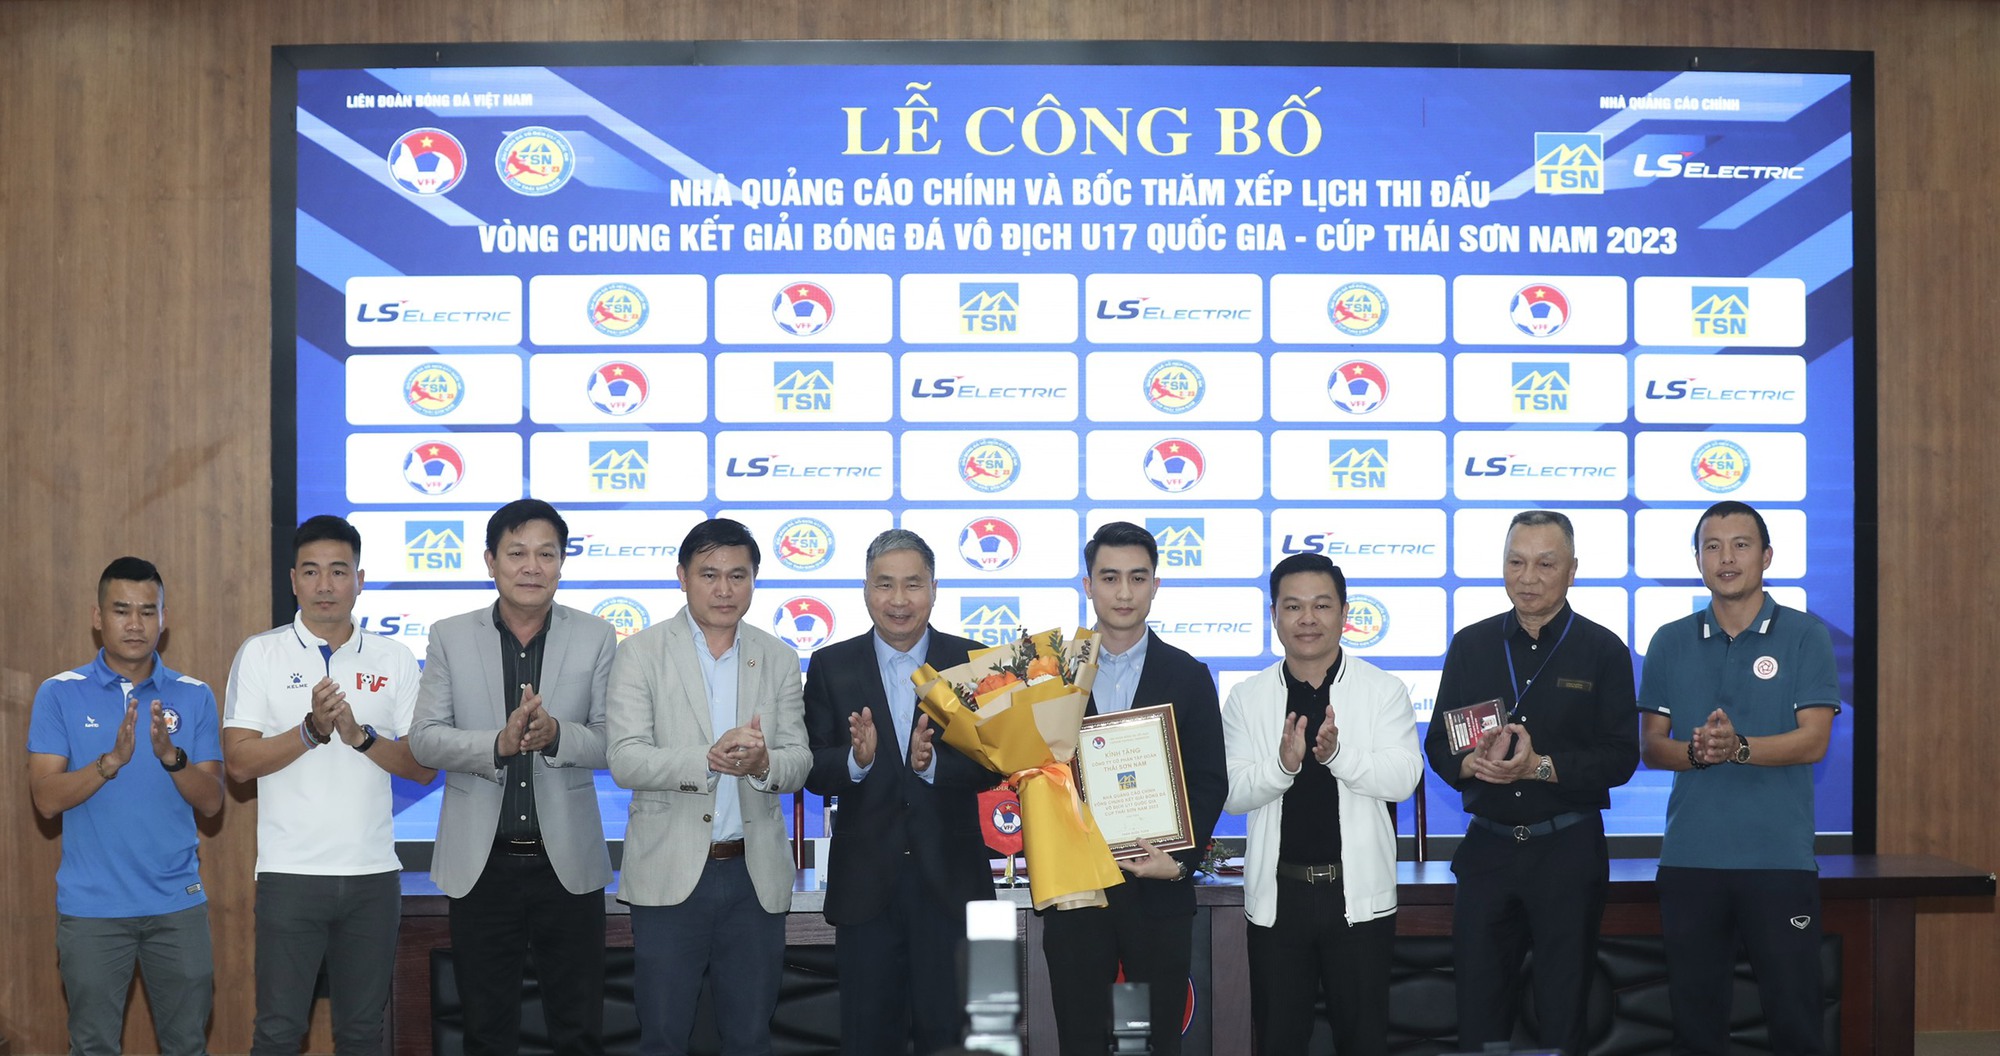 VCK U17 quốc gia 2023: Hấp dẫn màn tranh tài giữa HAGL và Hà Nội - Ảnh 1.